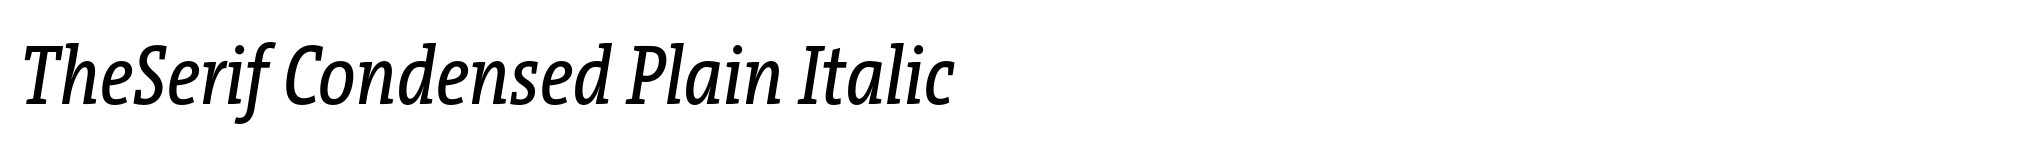 TheSerif Condensed Plain Italic image